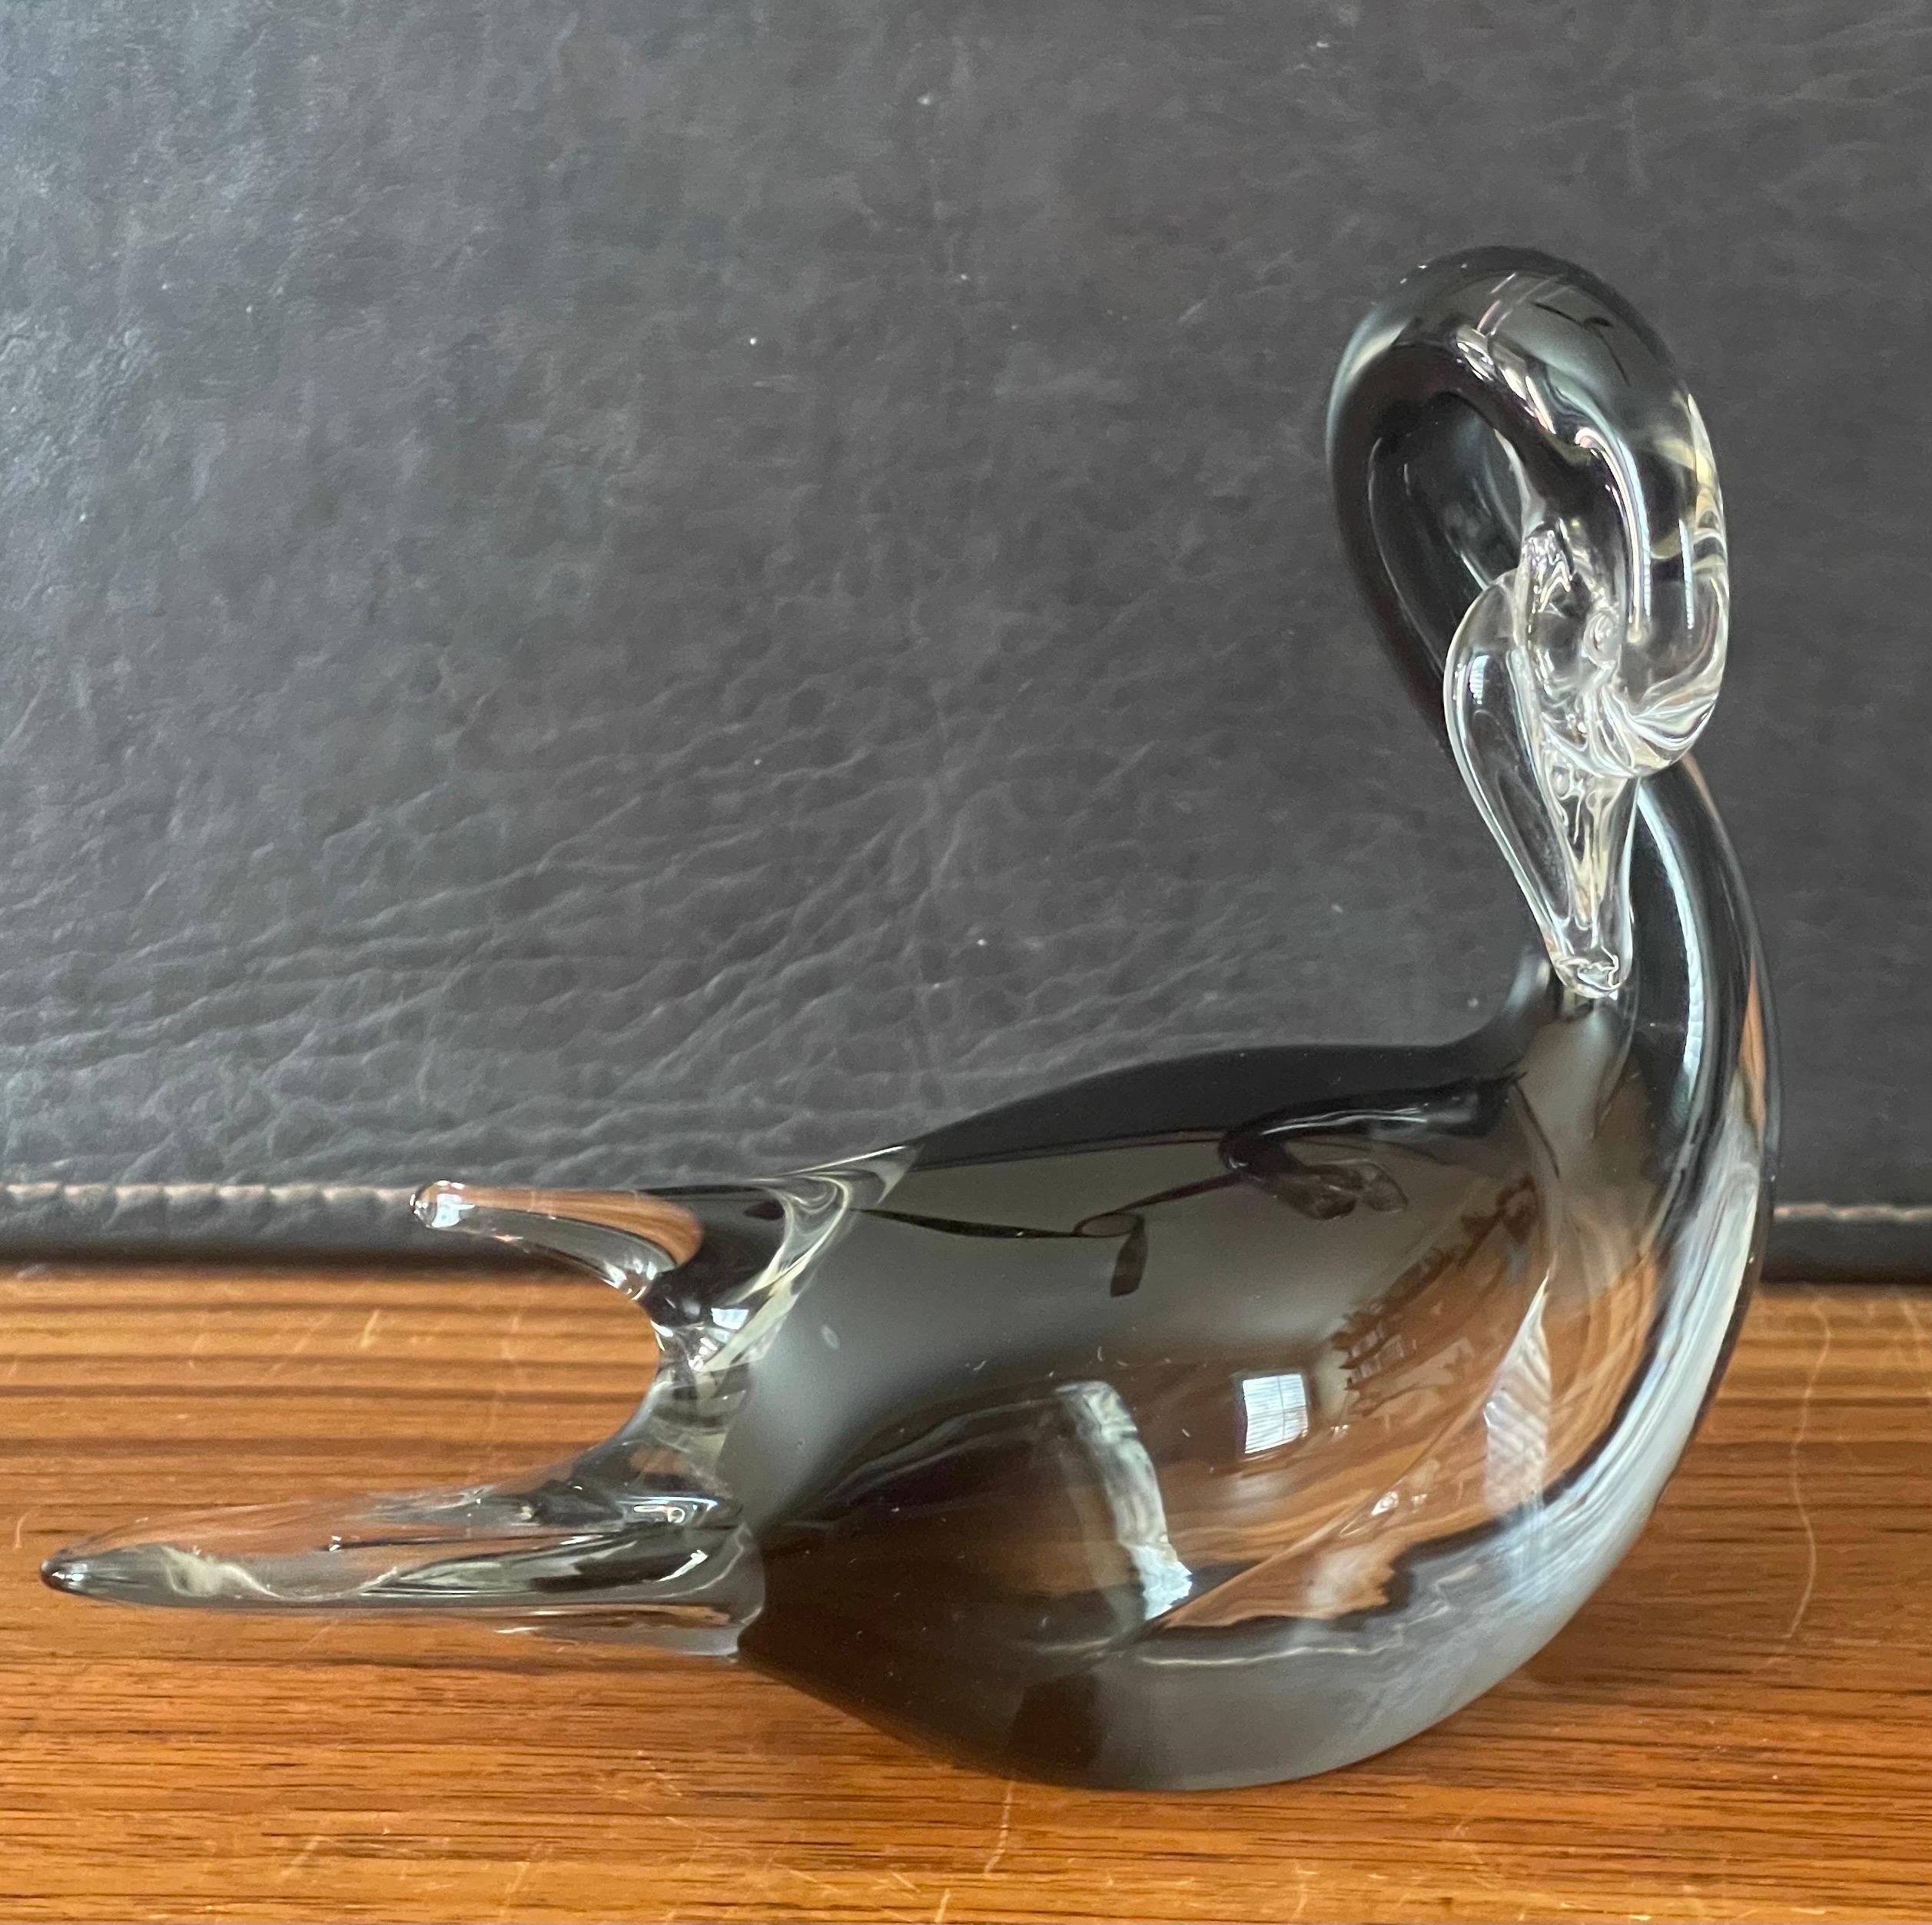 Élégante petite sculpture en verre d'art sommerso en forme de cygne, réalisée par Murano Glass, vers les années 1980. La pièce en technique sommerso a une merveilleuse couleur noire profonde sous le verre transparent et est en très bon état, sans